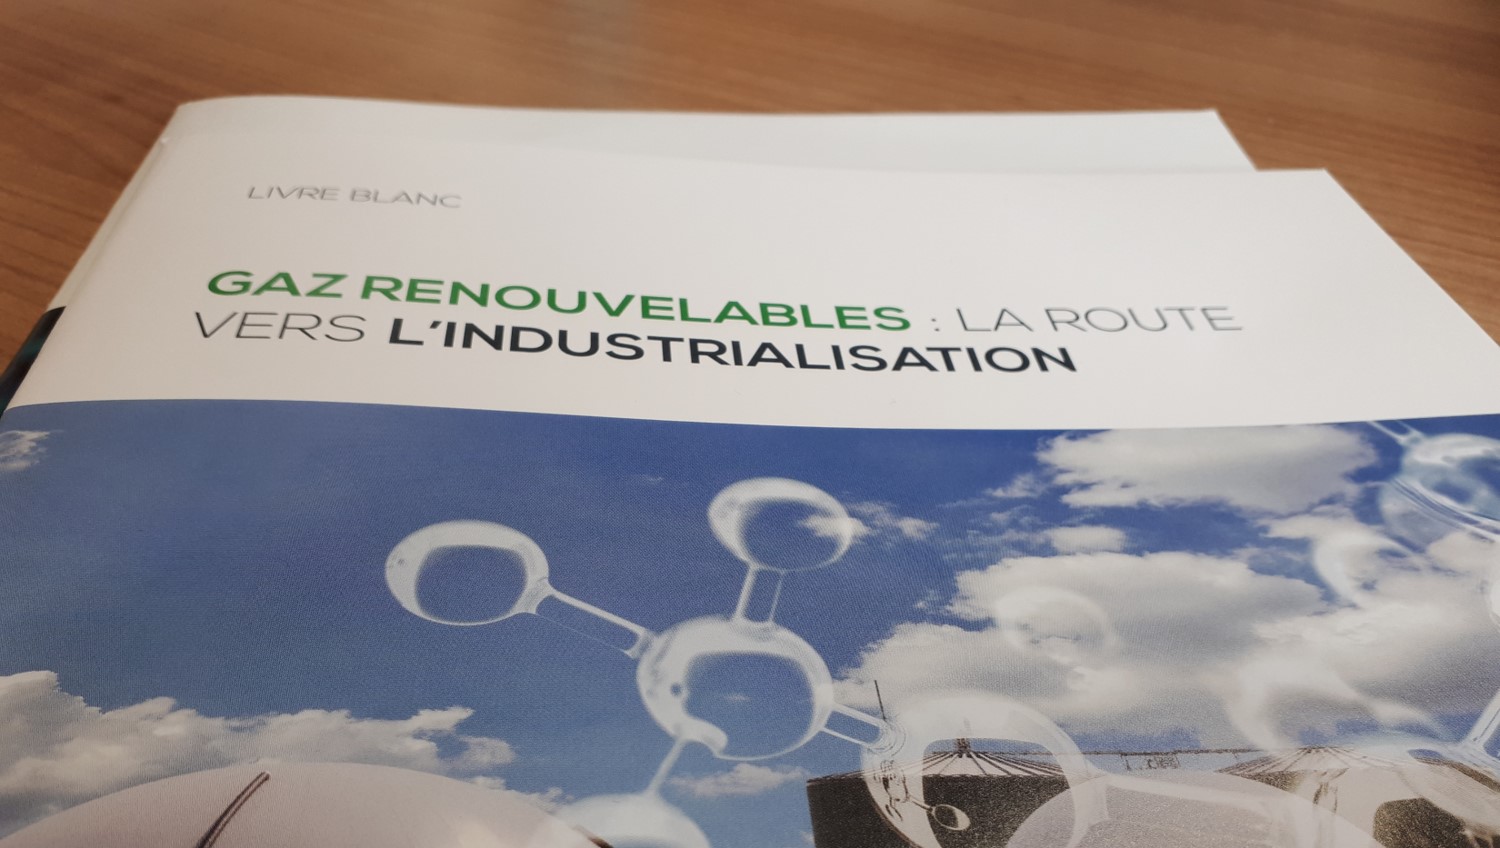 Lancement du livre blanc autour des gaz renouvelables lors de Biogaz Europe 2020